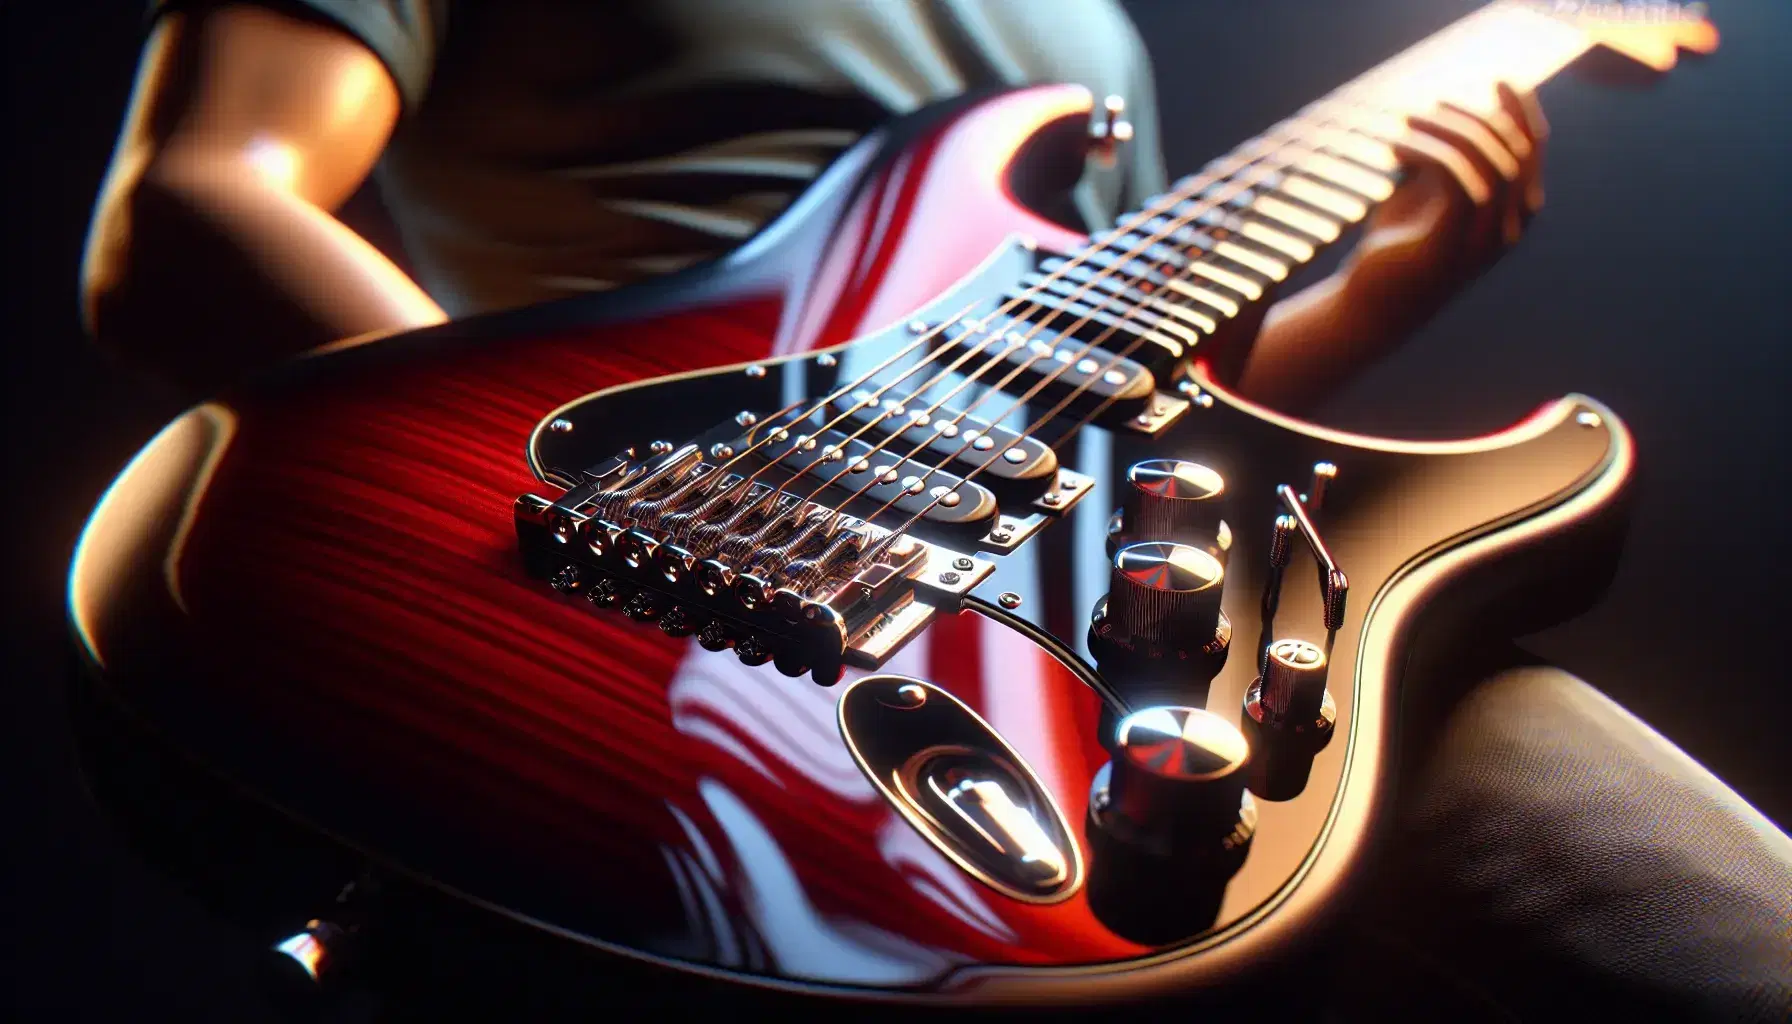 Guitarra eléctrica de acabado rojo brillante con cuerdas metálicas, inlays blancos en el mástil, puente plateado y perillas de ajuste.